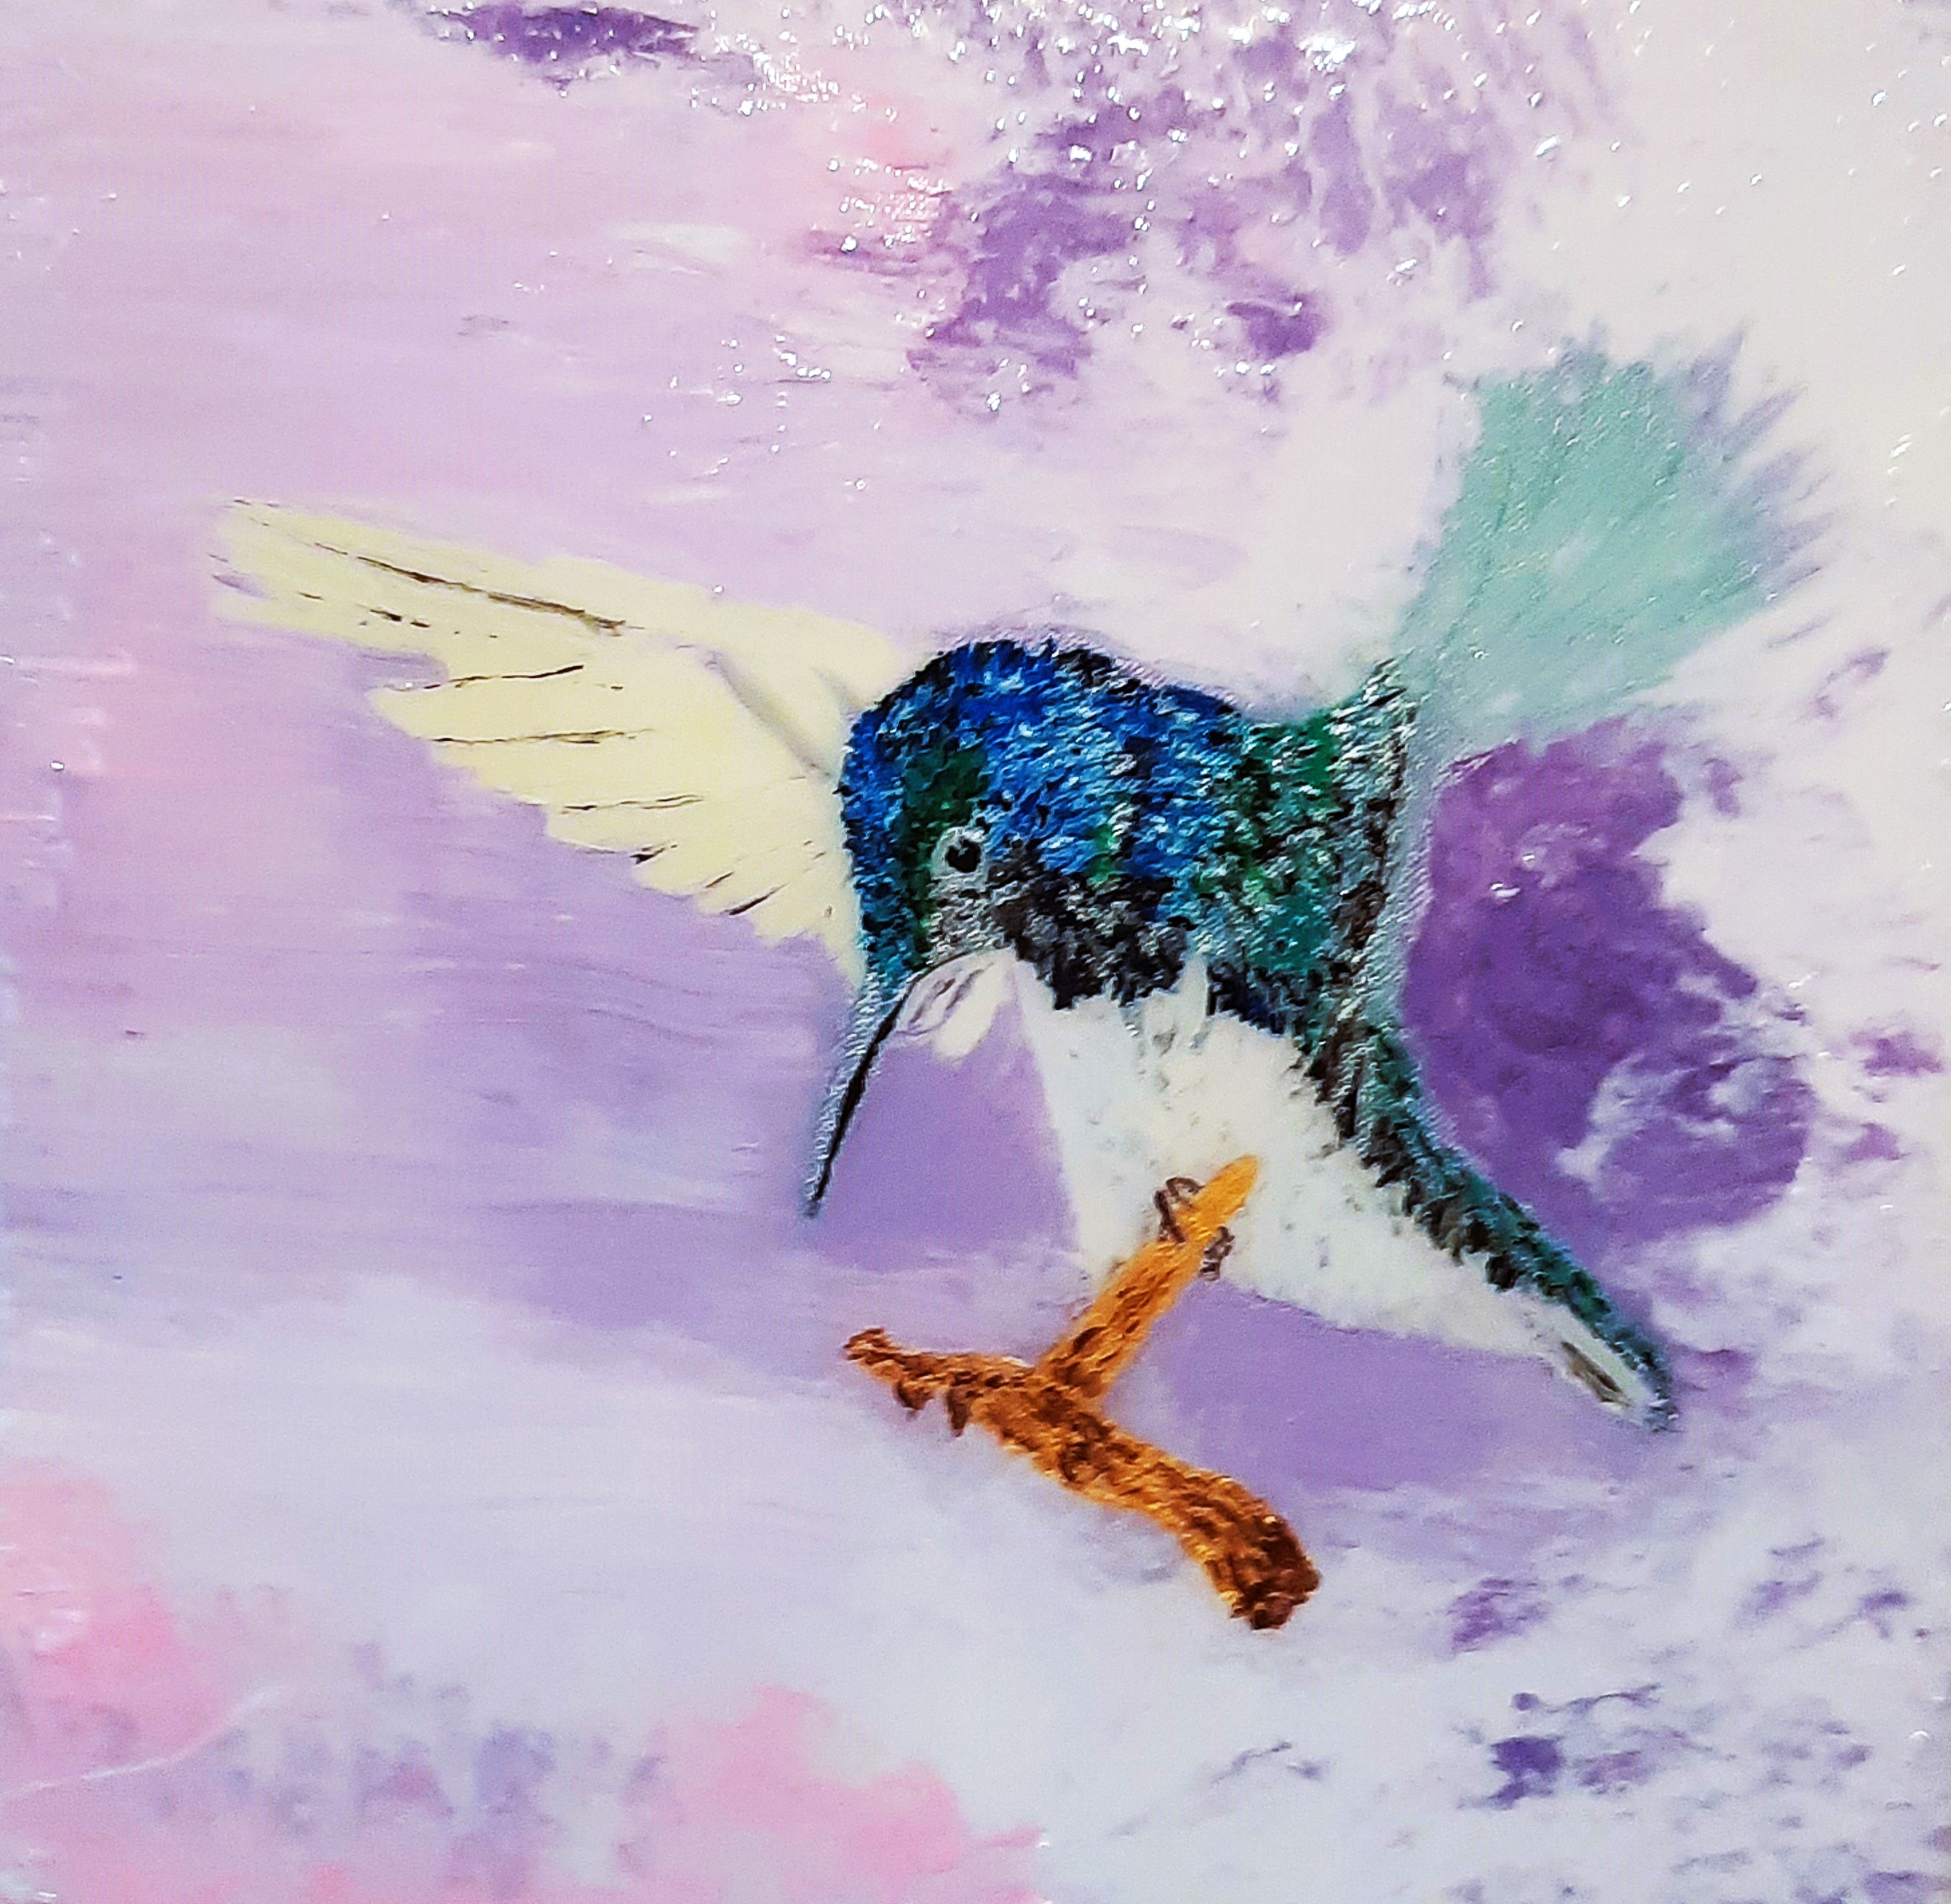 Kolibri
40 x 40 cm, Ölbild mit Resin